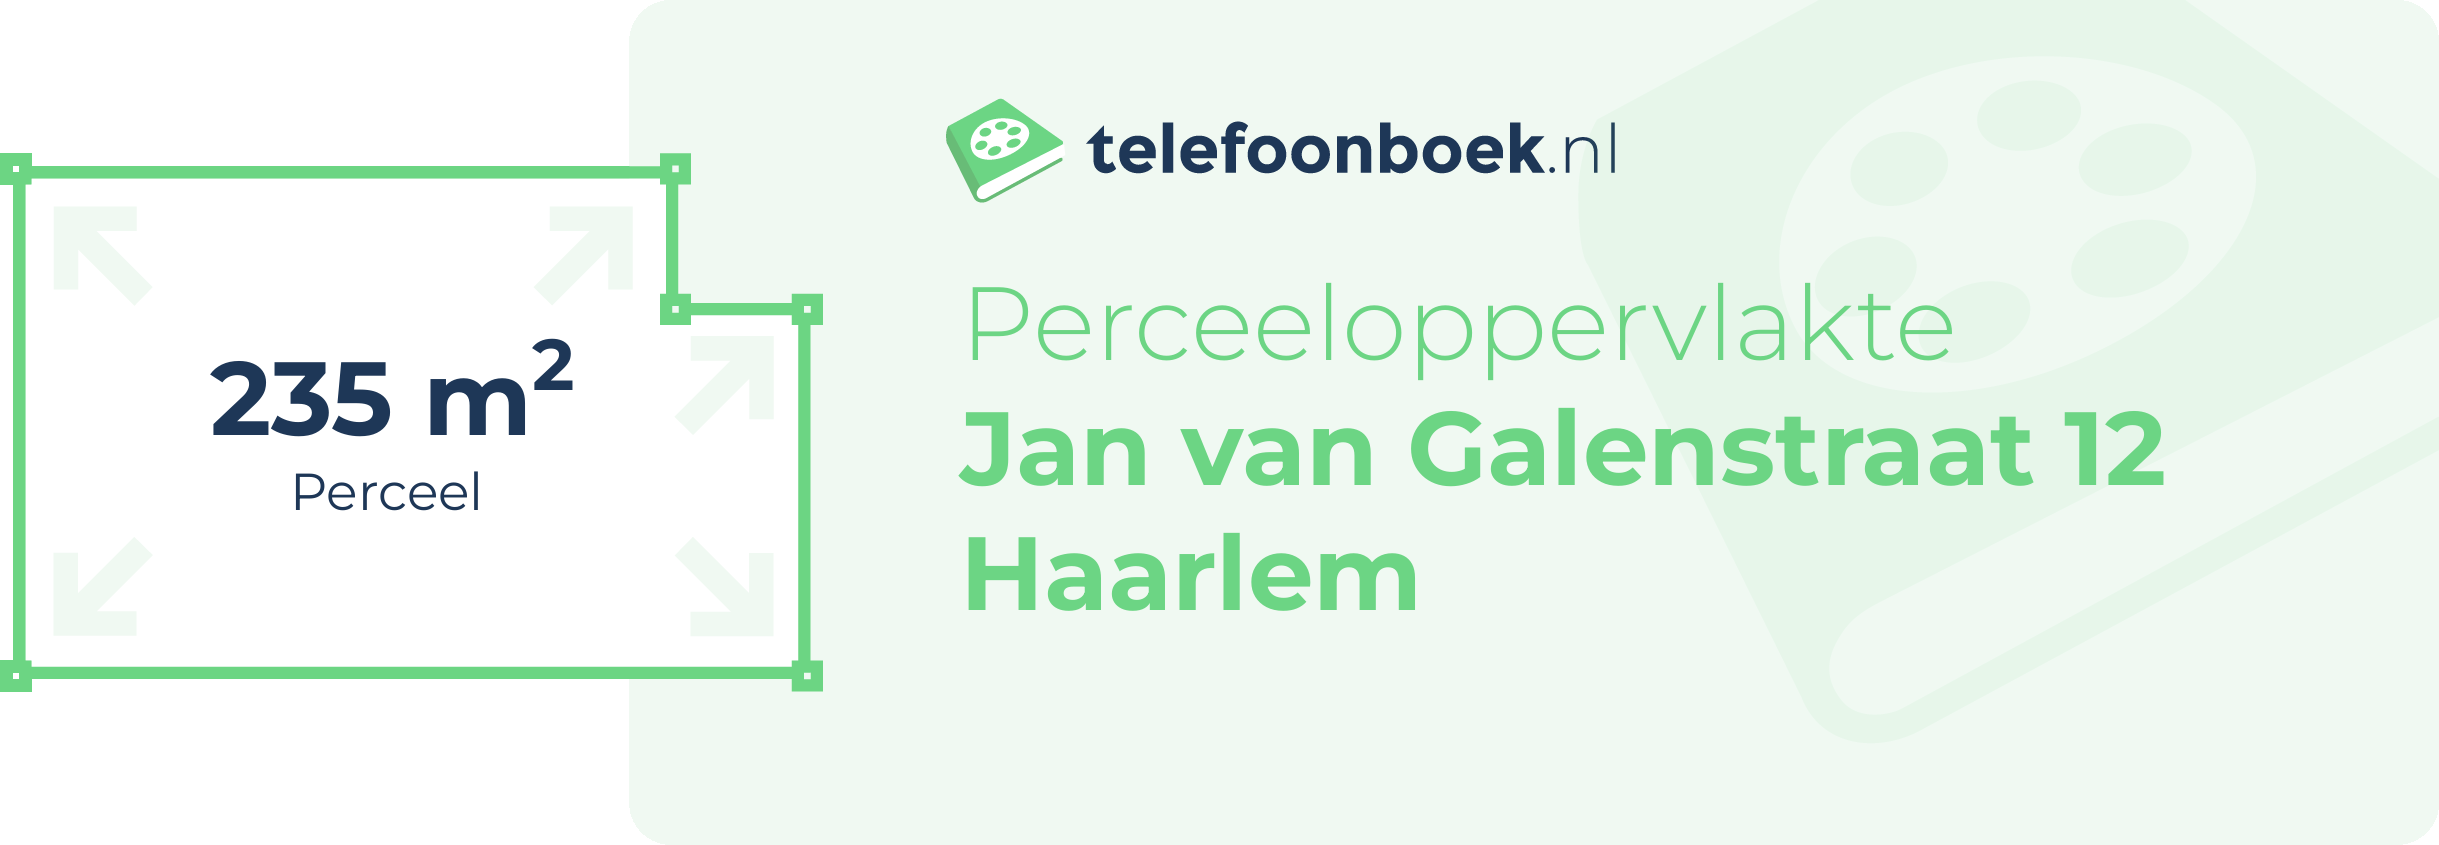 Perceeloppervlakte Jan Van Galenstraat 12 Haarlem